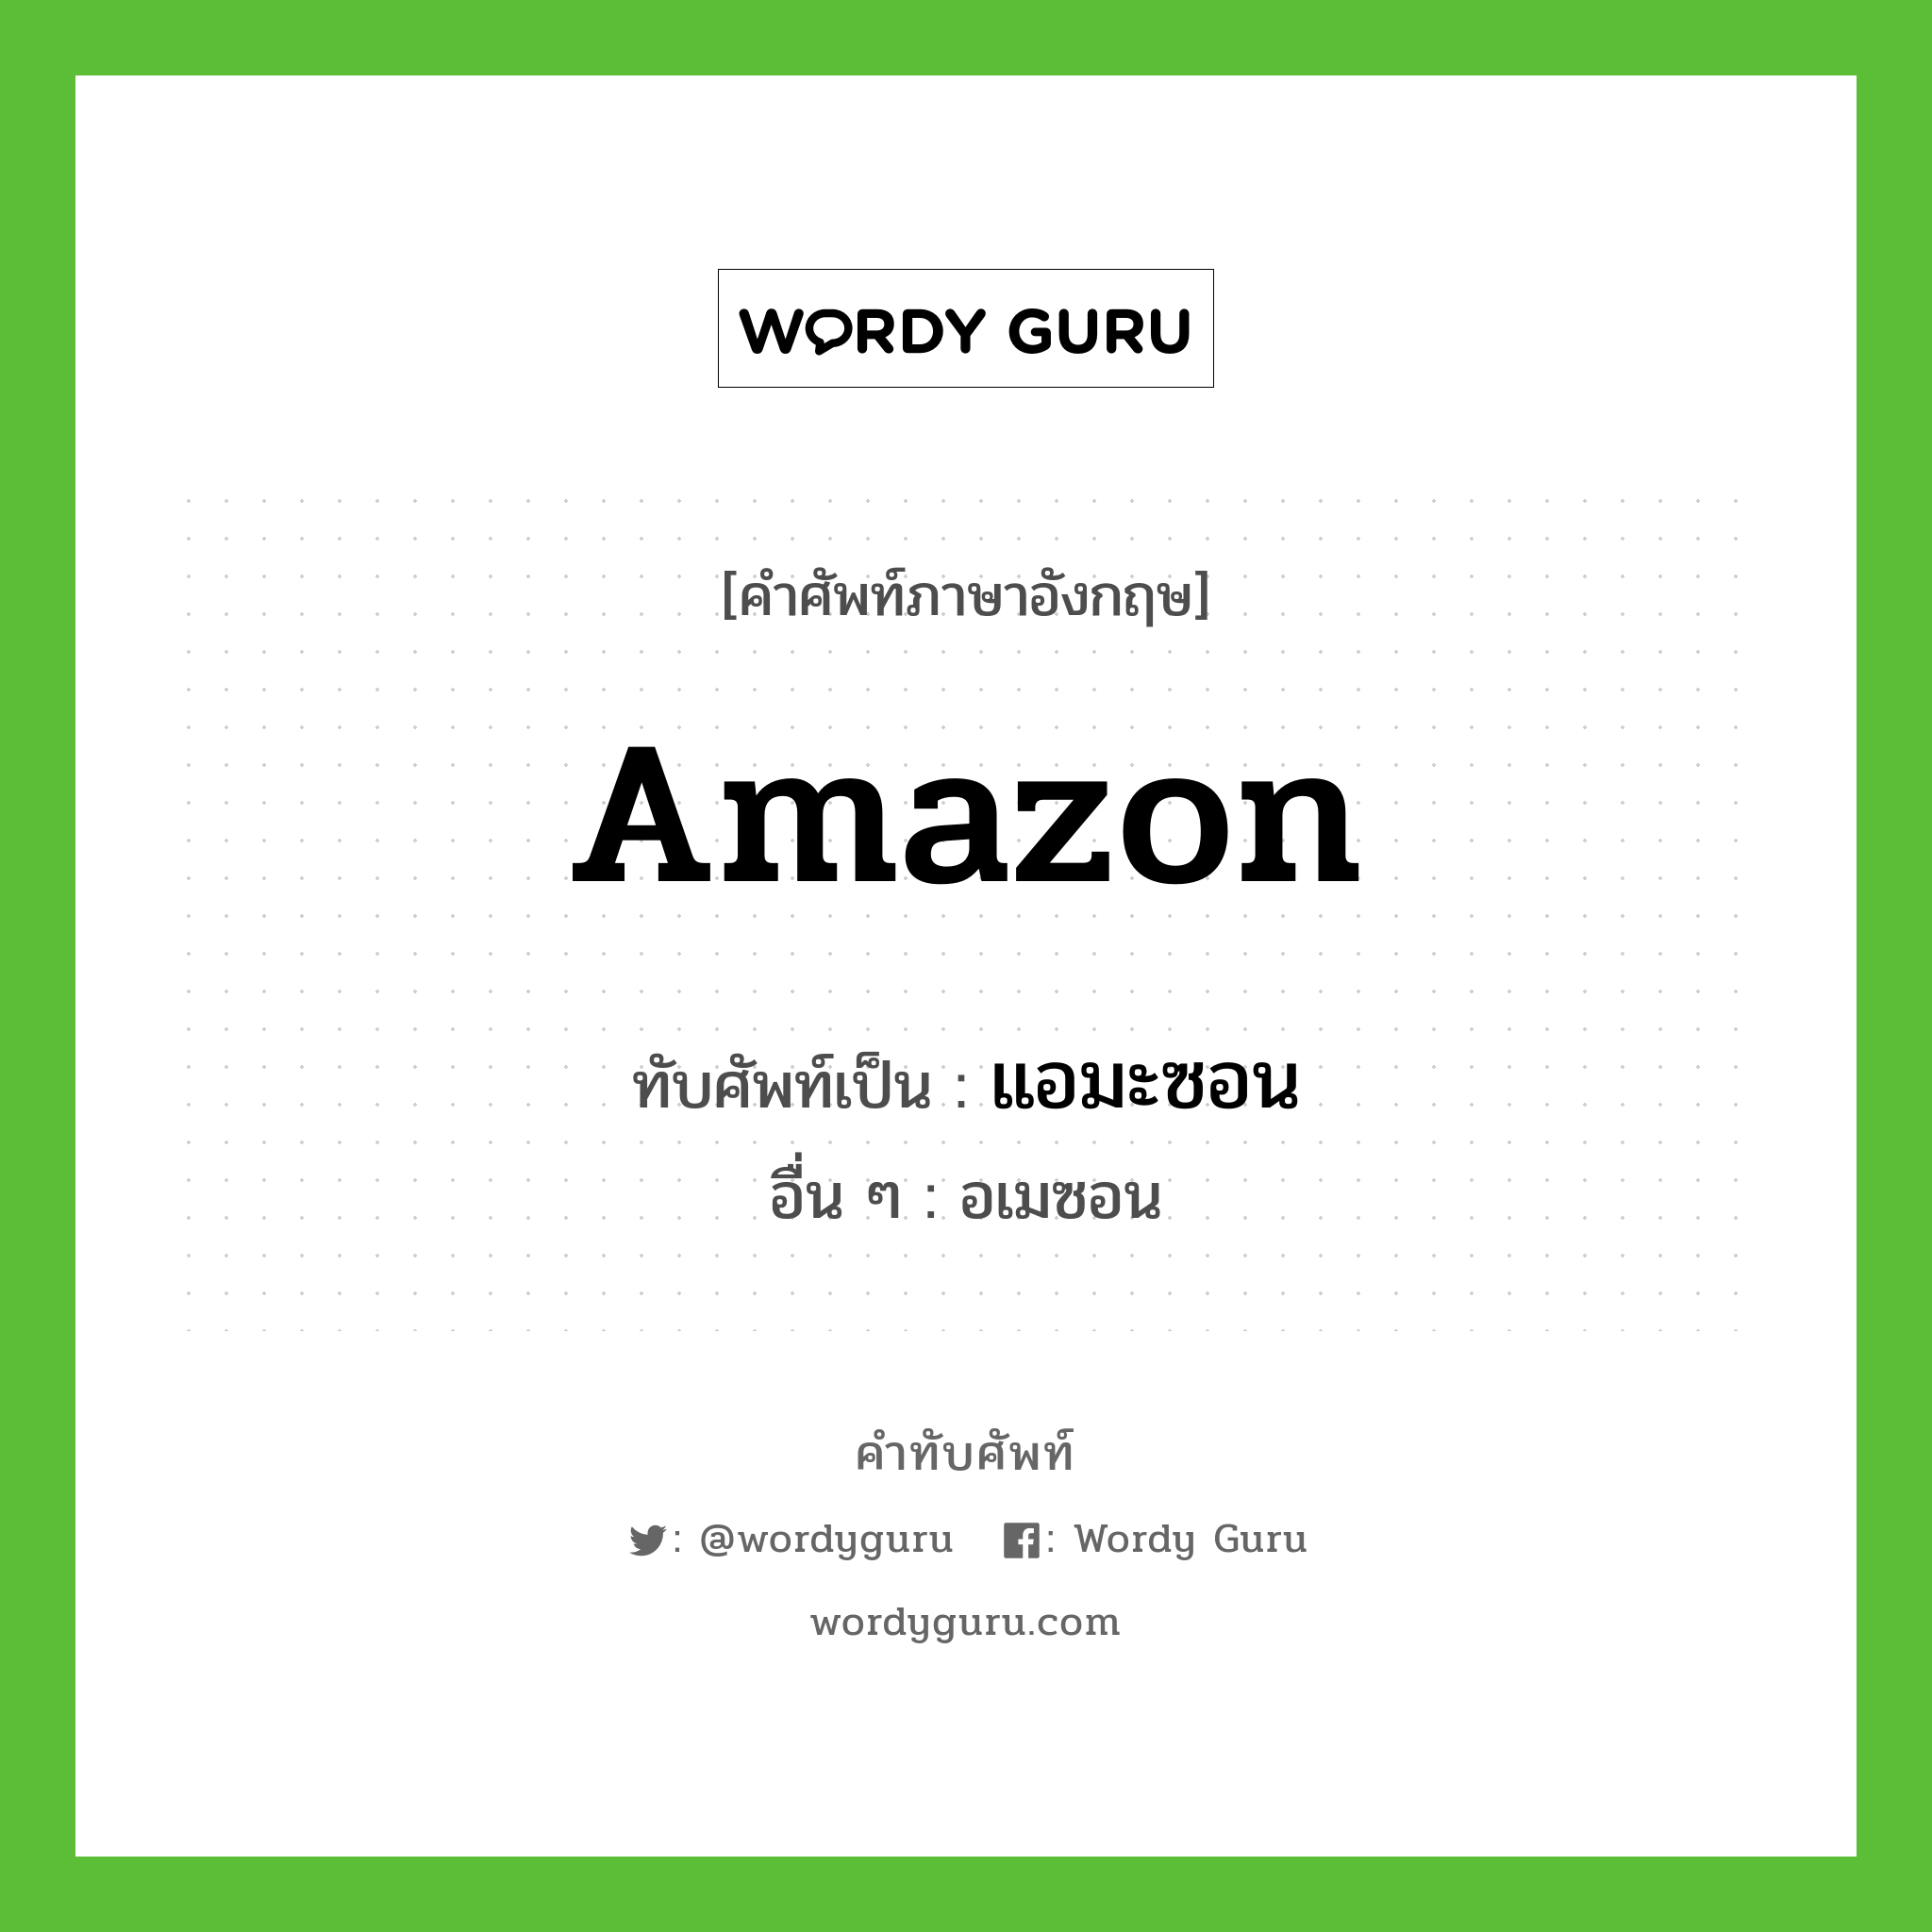 แอมะซอน เขียนอย่างไร?, คำศัพท์ภาษาอังกฤษ แอมะซอน ทับศัพท์เป็น Amazon อื่น ๆ อเมซอน